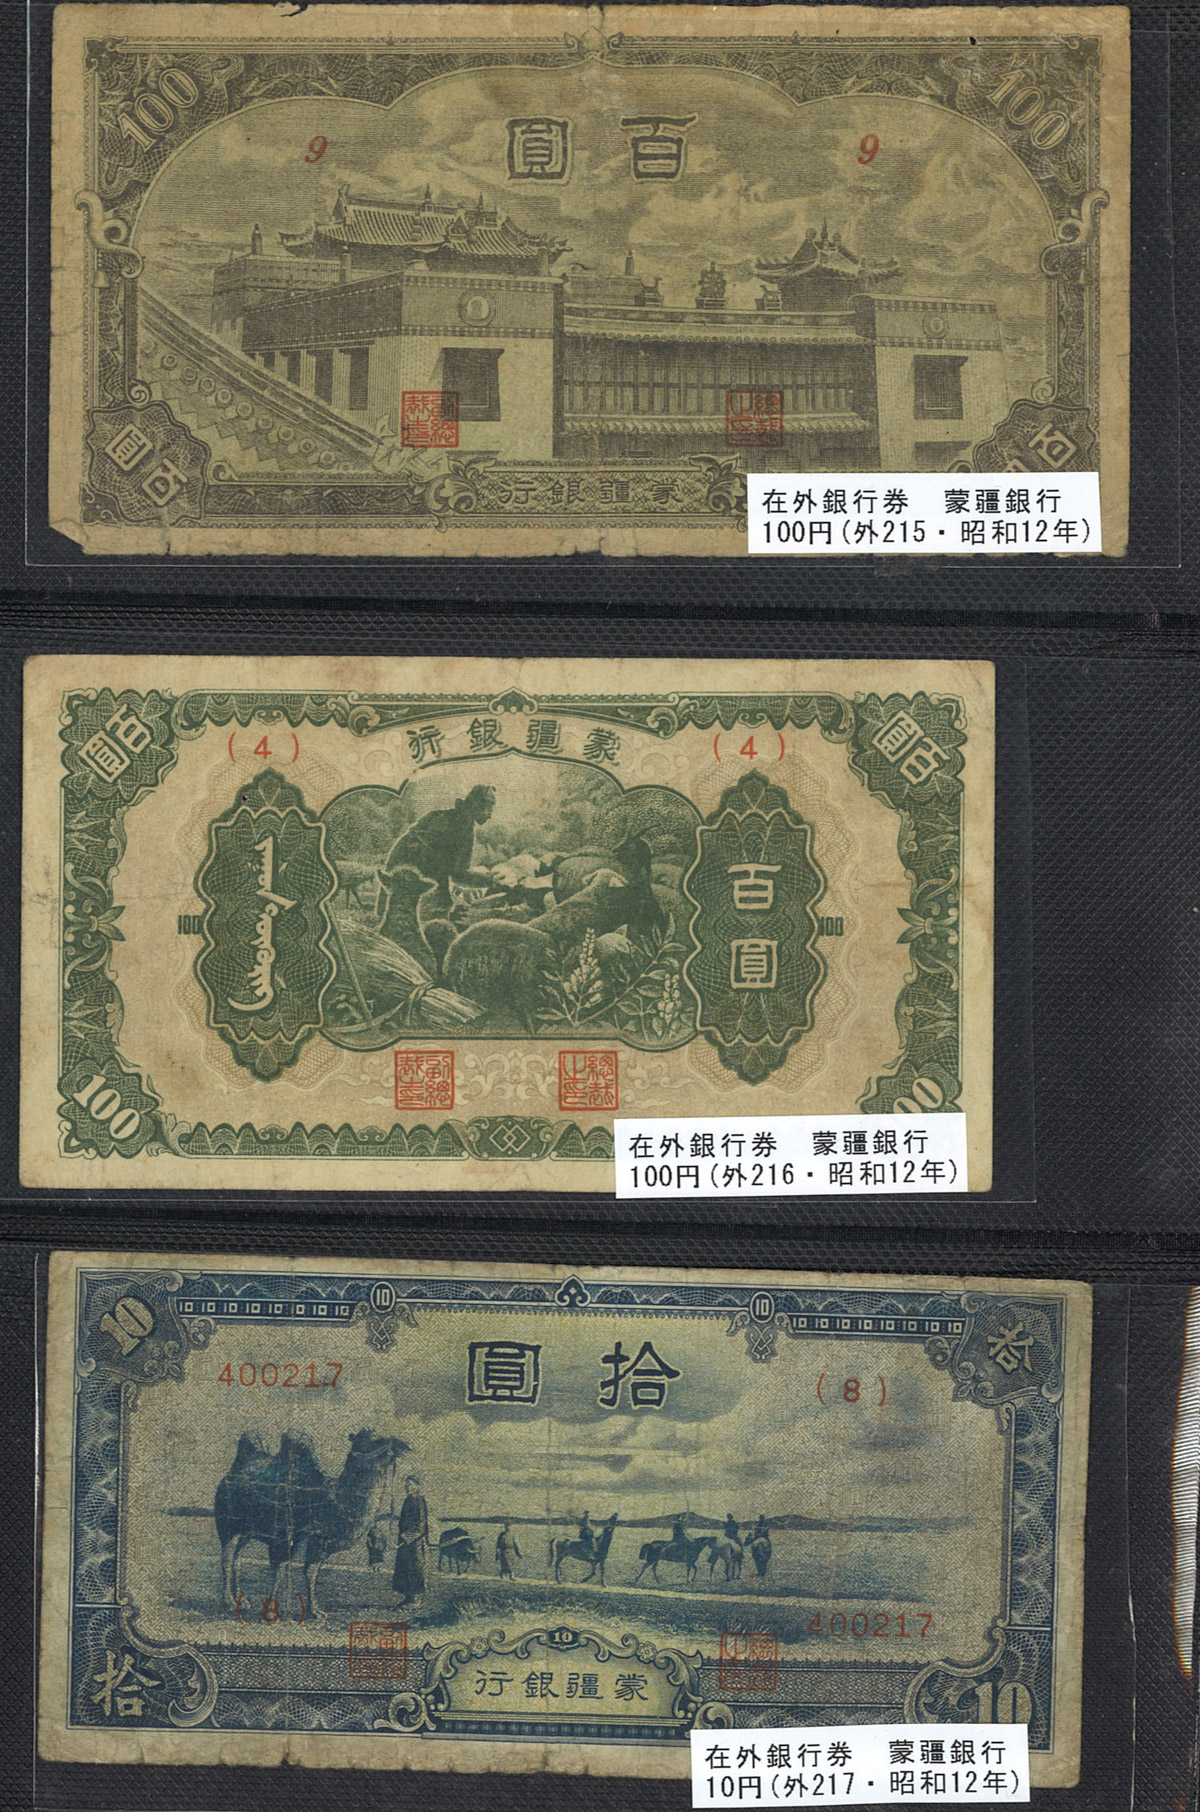 貨幣博物館 | 紙幣 Banknotes 蒙疆銀行 五分